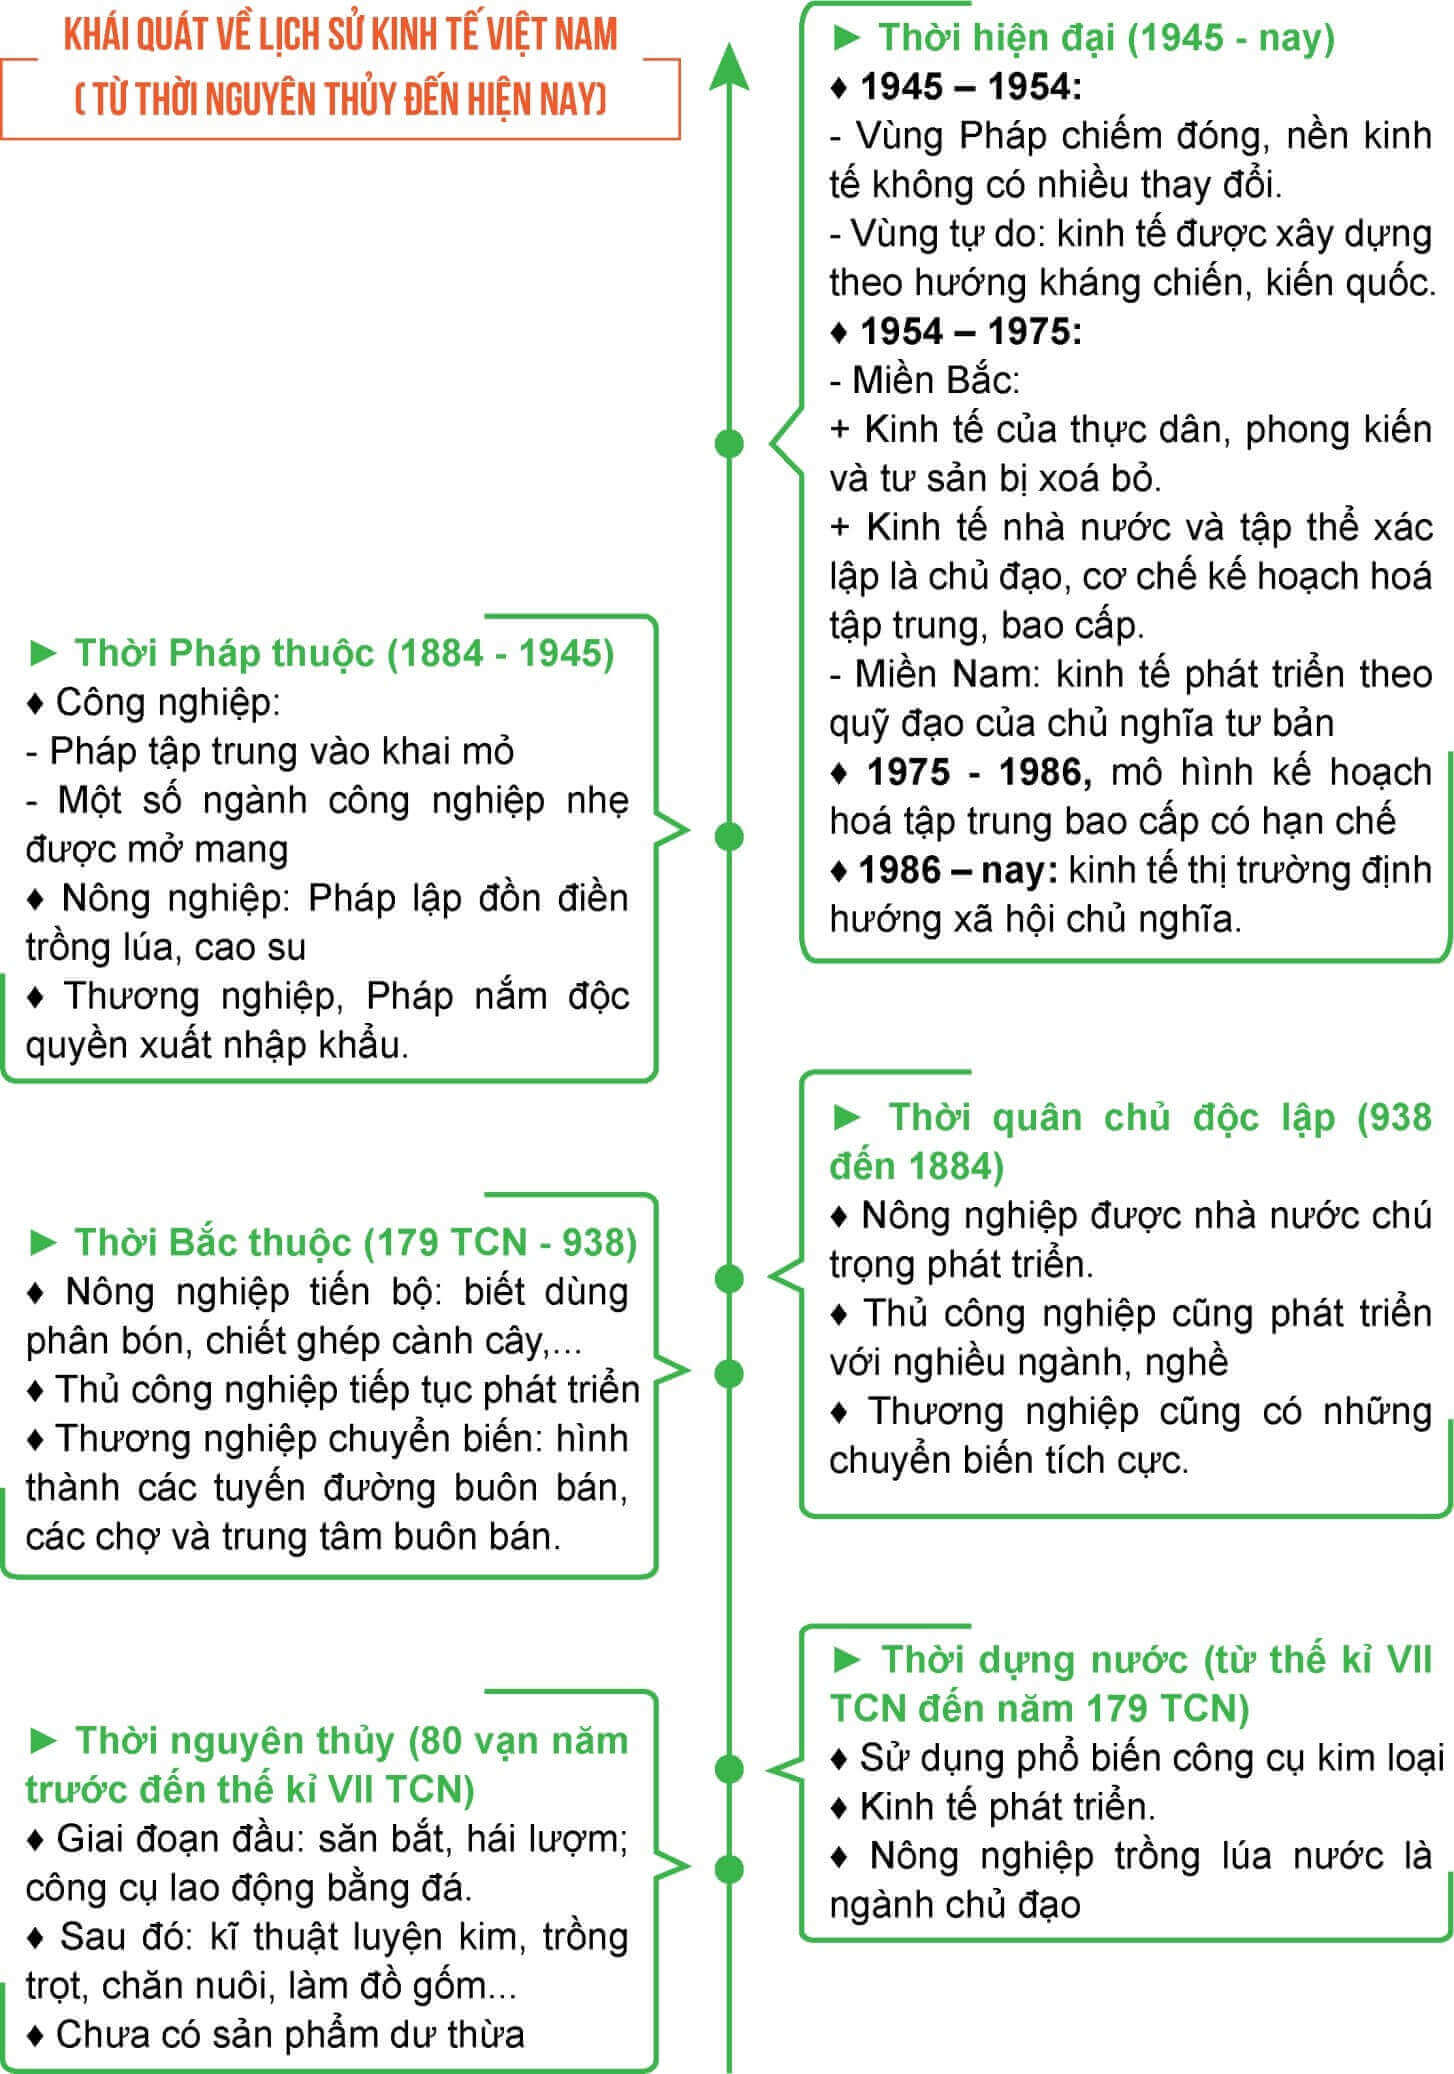 Tóm tắt những nét chính của lịch sử kinh tế Việt Nam trên trục thời gian